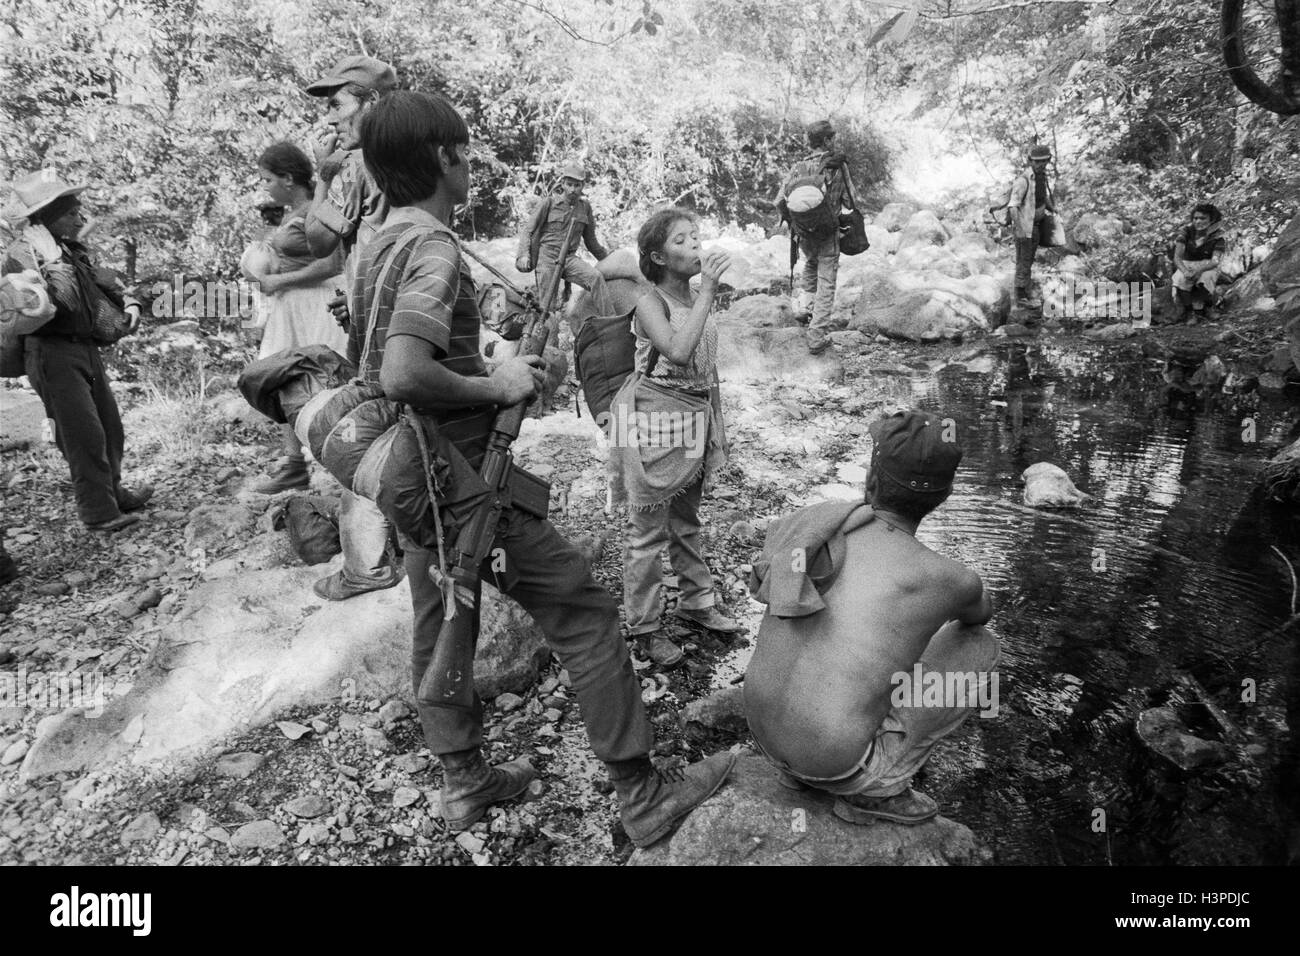 CHALATENANGO, EL SALVADOR, FEB 1984: - innerhalb der FPL Zonen Control A Guerillagruppe FPL-Männer und Frauen Kämpfer Rest und nehmen Wasser aus einem Stream. Stockfoto